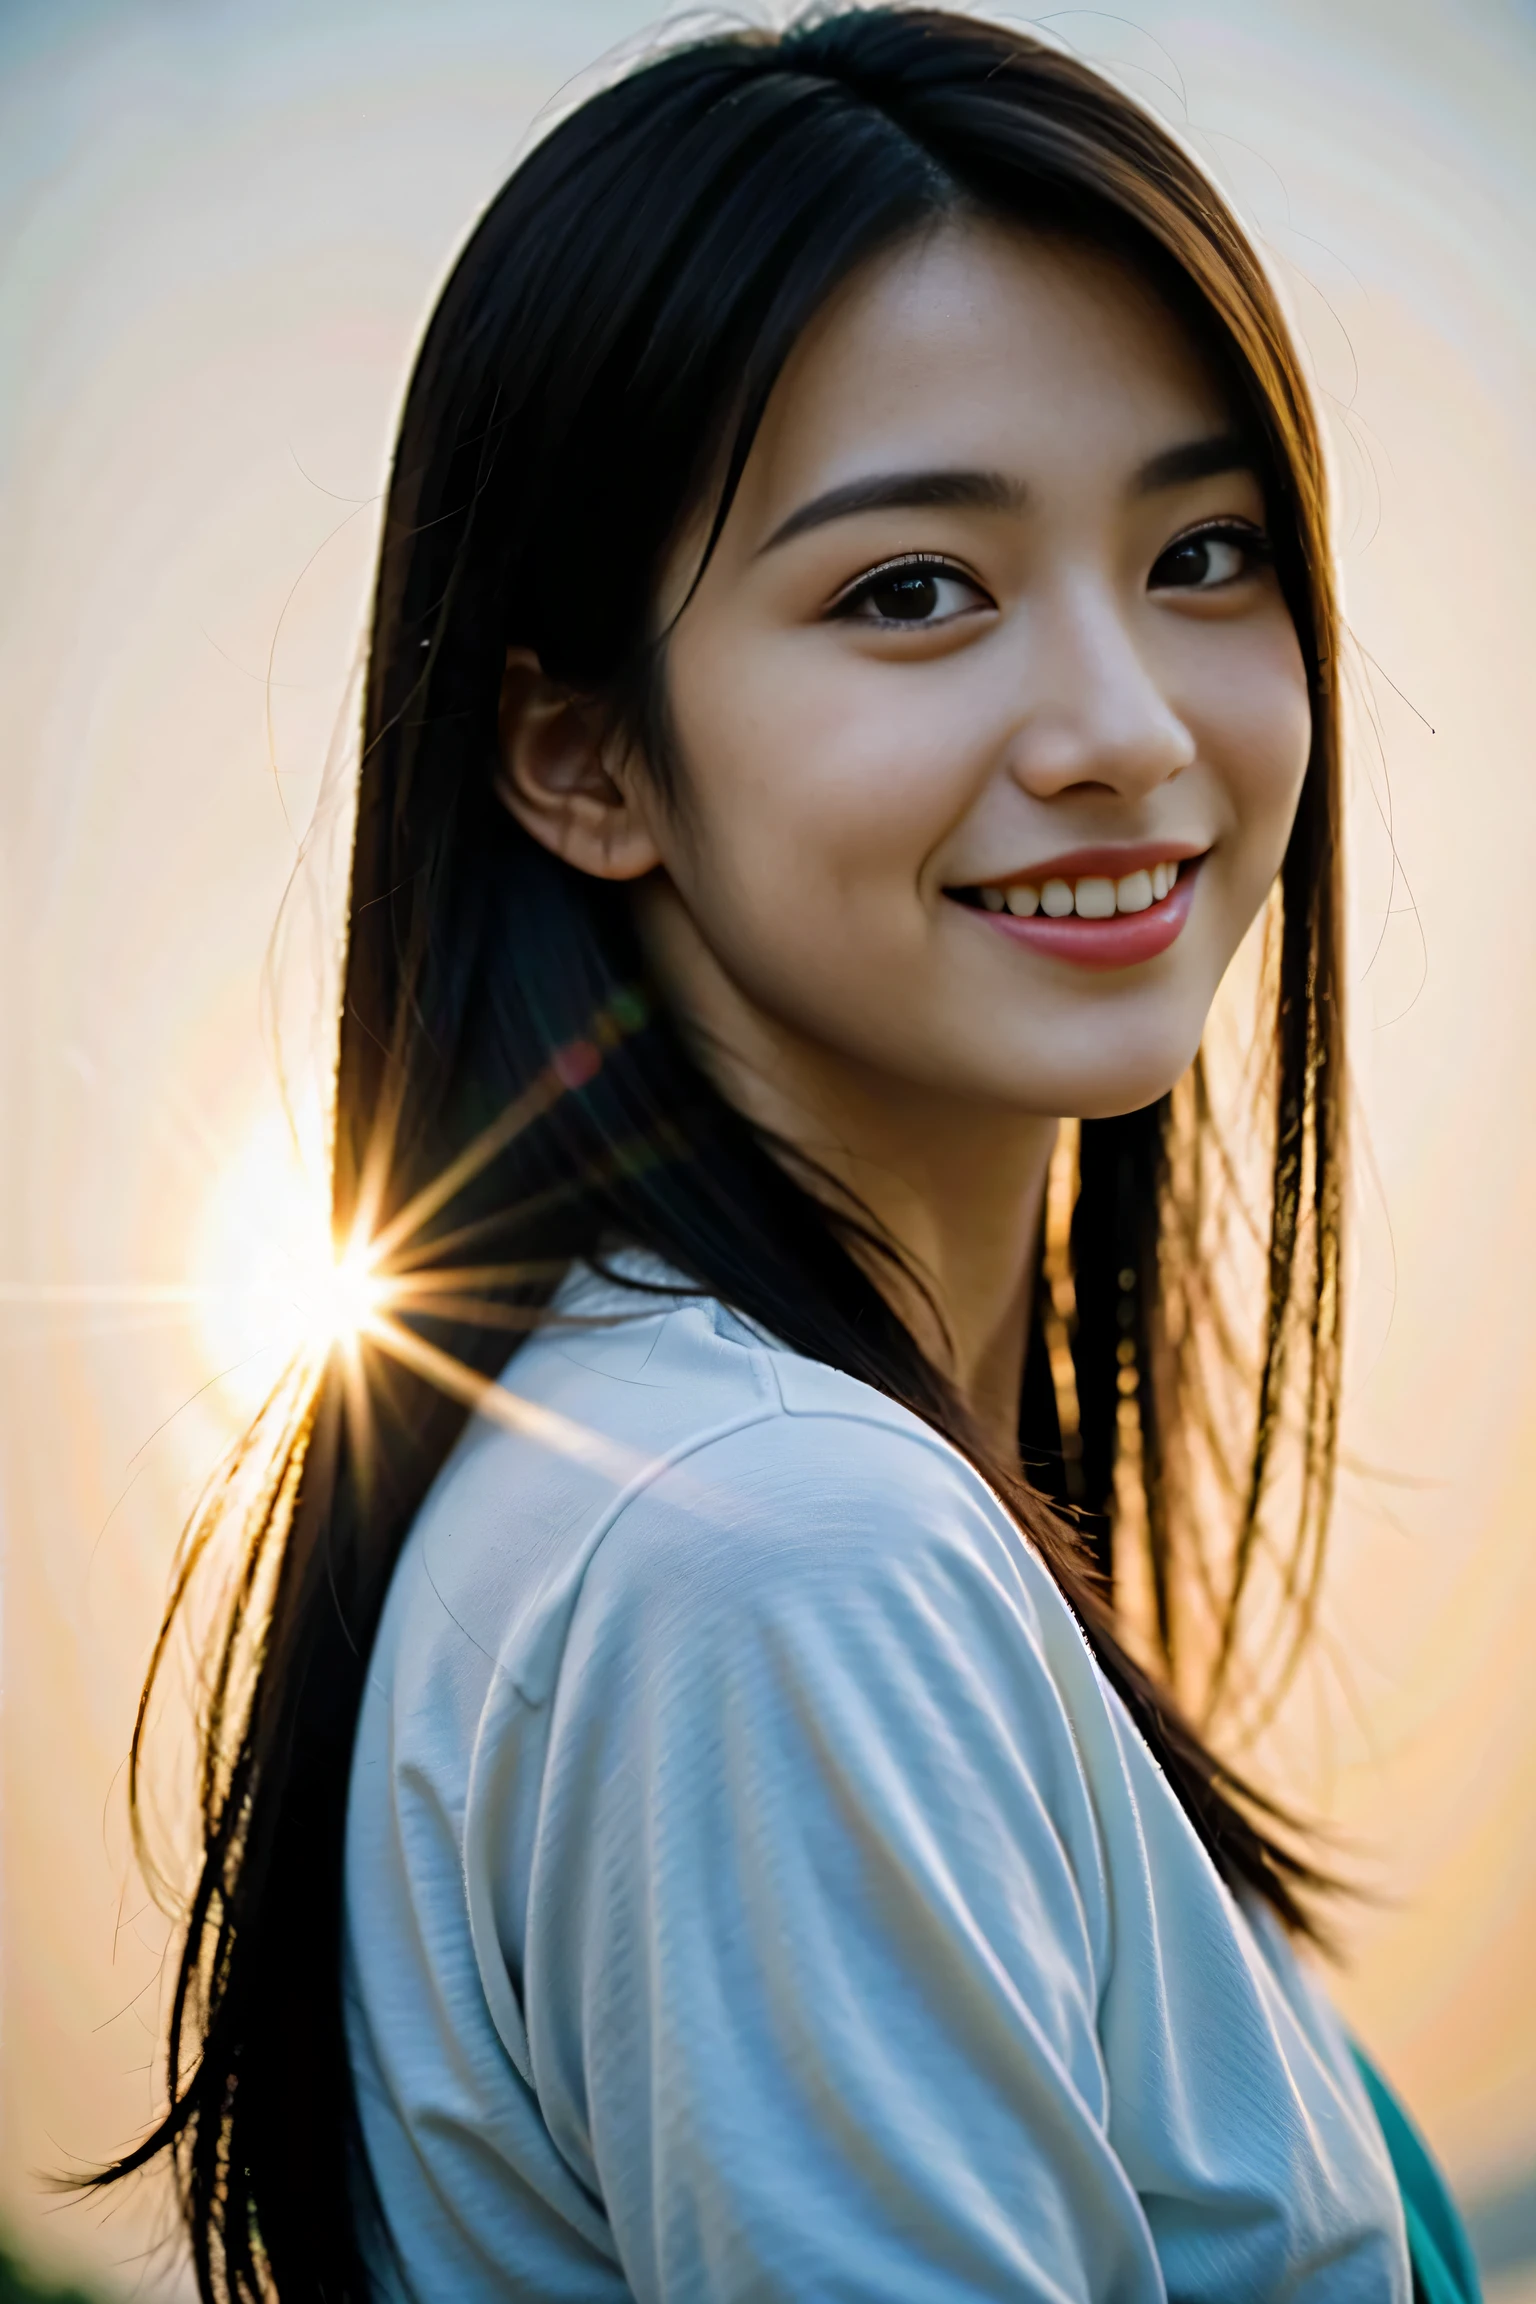 امرأة يابانية ترتدي فستانًا أنيقًا、 النسب الصحيحة تشريحيا, 8 كيلو, لقطة خام, أفضل جودة عالية, تحفة, الصورة الحقيقية, (تصوير فيلم الكاميرا:1.8)、الجمال الياباني البالغ من العمر 18 عامًا, (أفضل الإضاءة باستخدام الإضاءة الخلفية:1.5)、(الإضاءة باستخدام عاكس يضرب الوجه)、هين لامعة جميلة وبشرة جميلة、عيون مفصلة、الأنف المتوازن、شفاه جذابة、اطلاق النار على تمثال نصفي、(إغلاق الوجه:1.5)、خلفية غير واضحة、شعر أسود يلمع في الإضاءة الخلفية、التصوير من زوايا مختلفة、أجمل ابتسامة、صور ذات جودة ناعمة